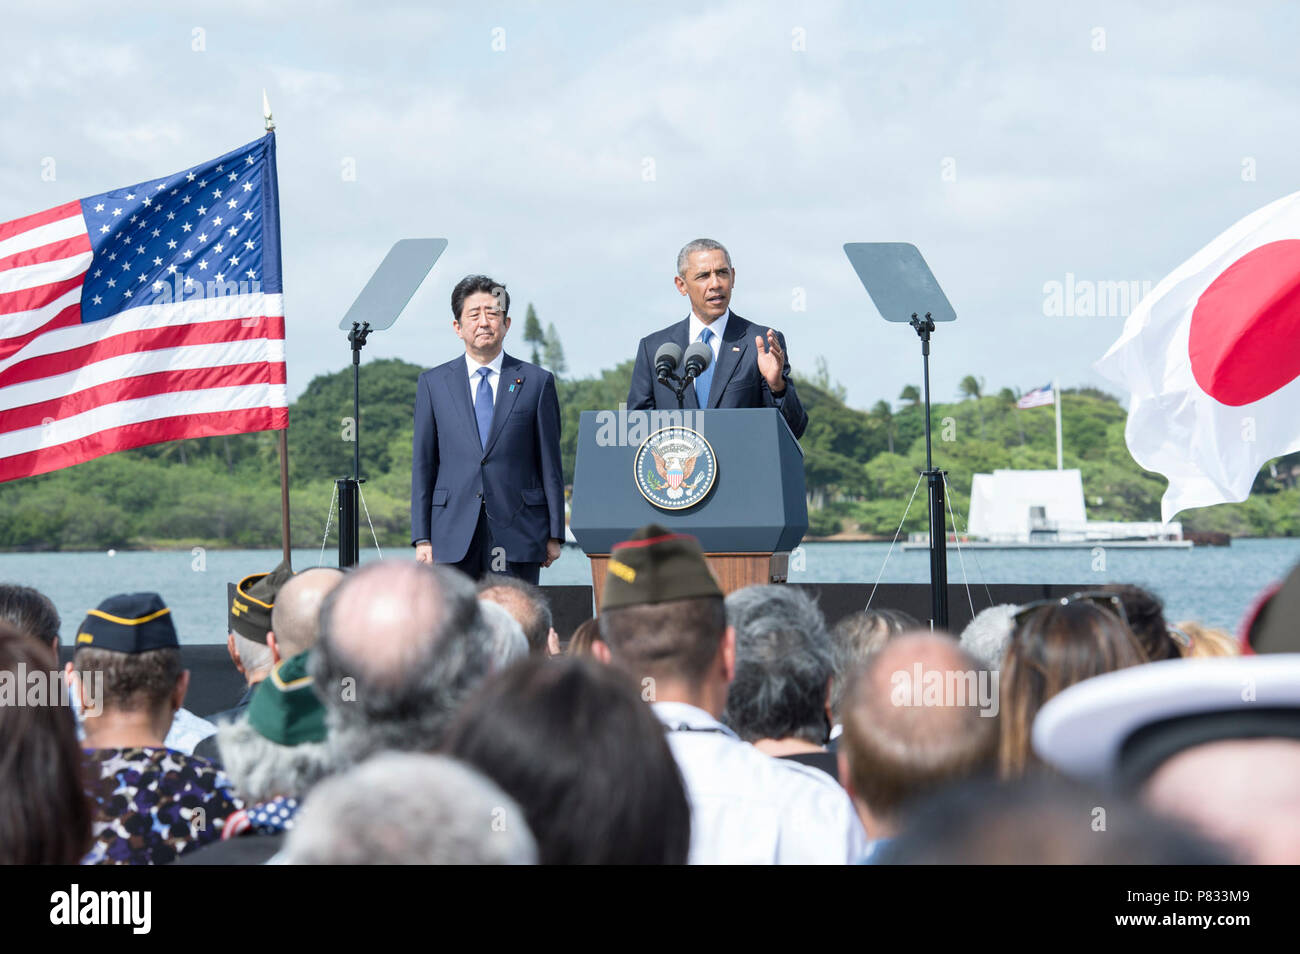 JOINT BASE Pearl Harbor - HICKAM, Hawaii (31. 27, 2016) US-Präsident Barack Obama spricht über Kilo Pier am Joint Base Pearl Harbor-Hickam, während der japanische Ministerpräsident auf aussieht. Präsident Obama bezeichnete die US-japanischen Allianz als Eckpfeiler des Friedens und der Stabilität in der asiatisch-pazifischen und eine Kraft für den Fortschritt rund um den Globus. Stockfoto